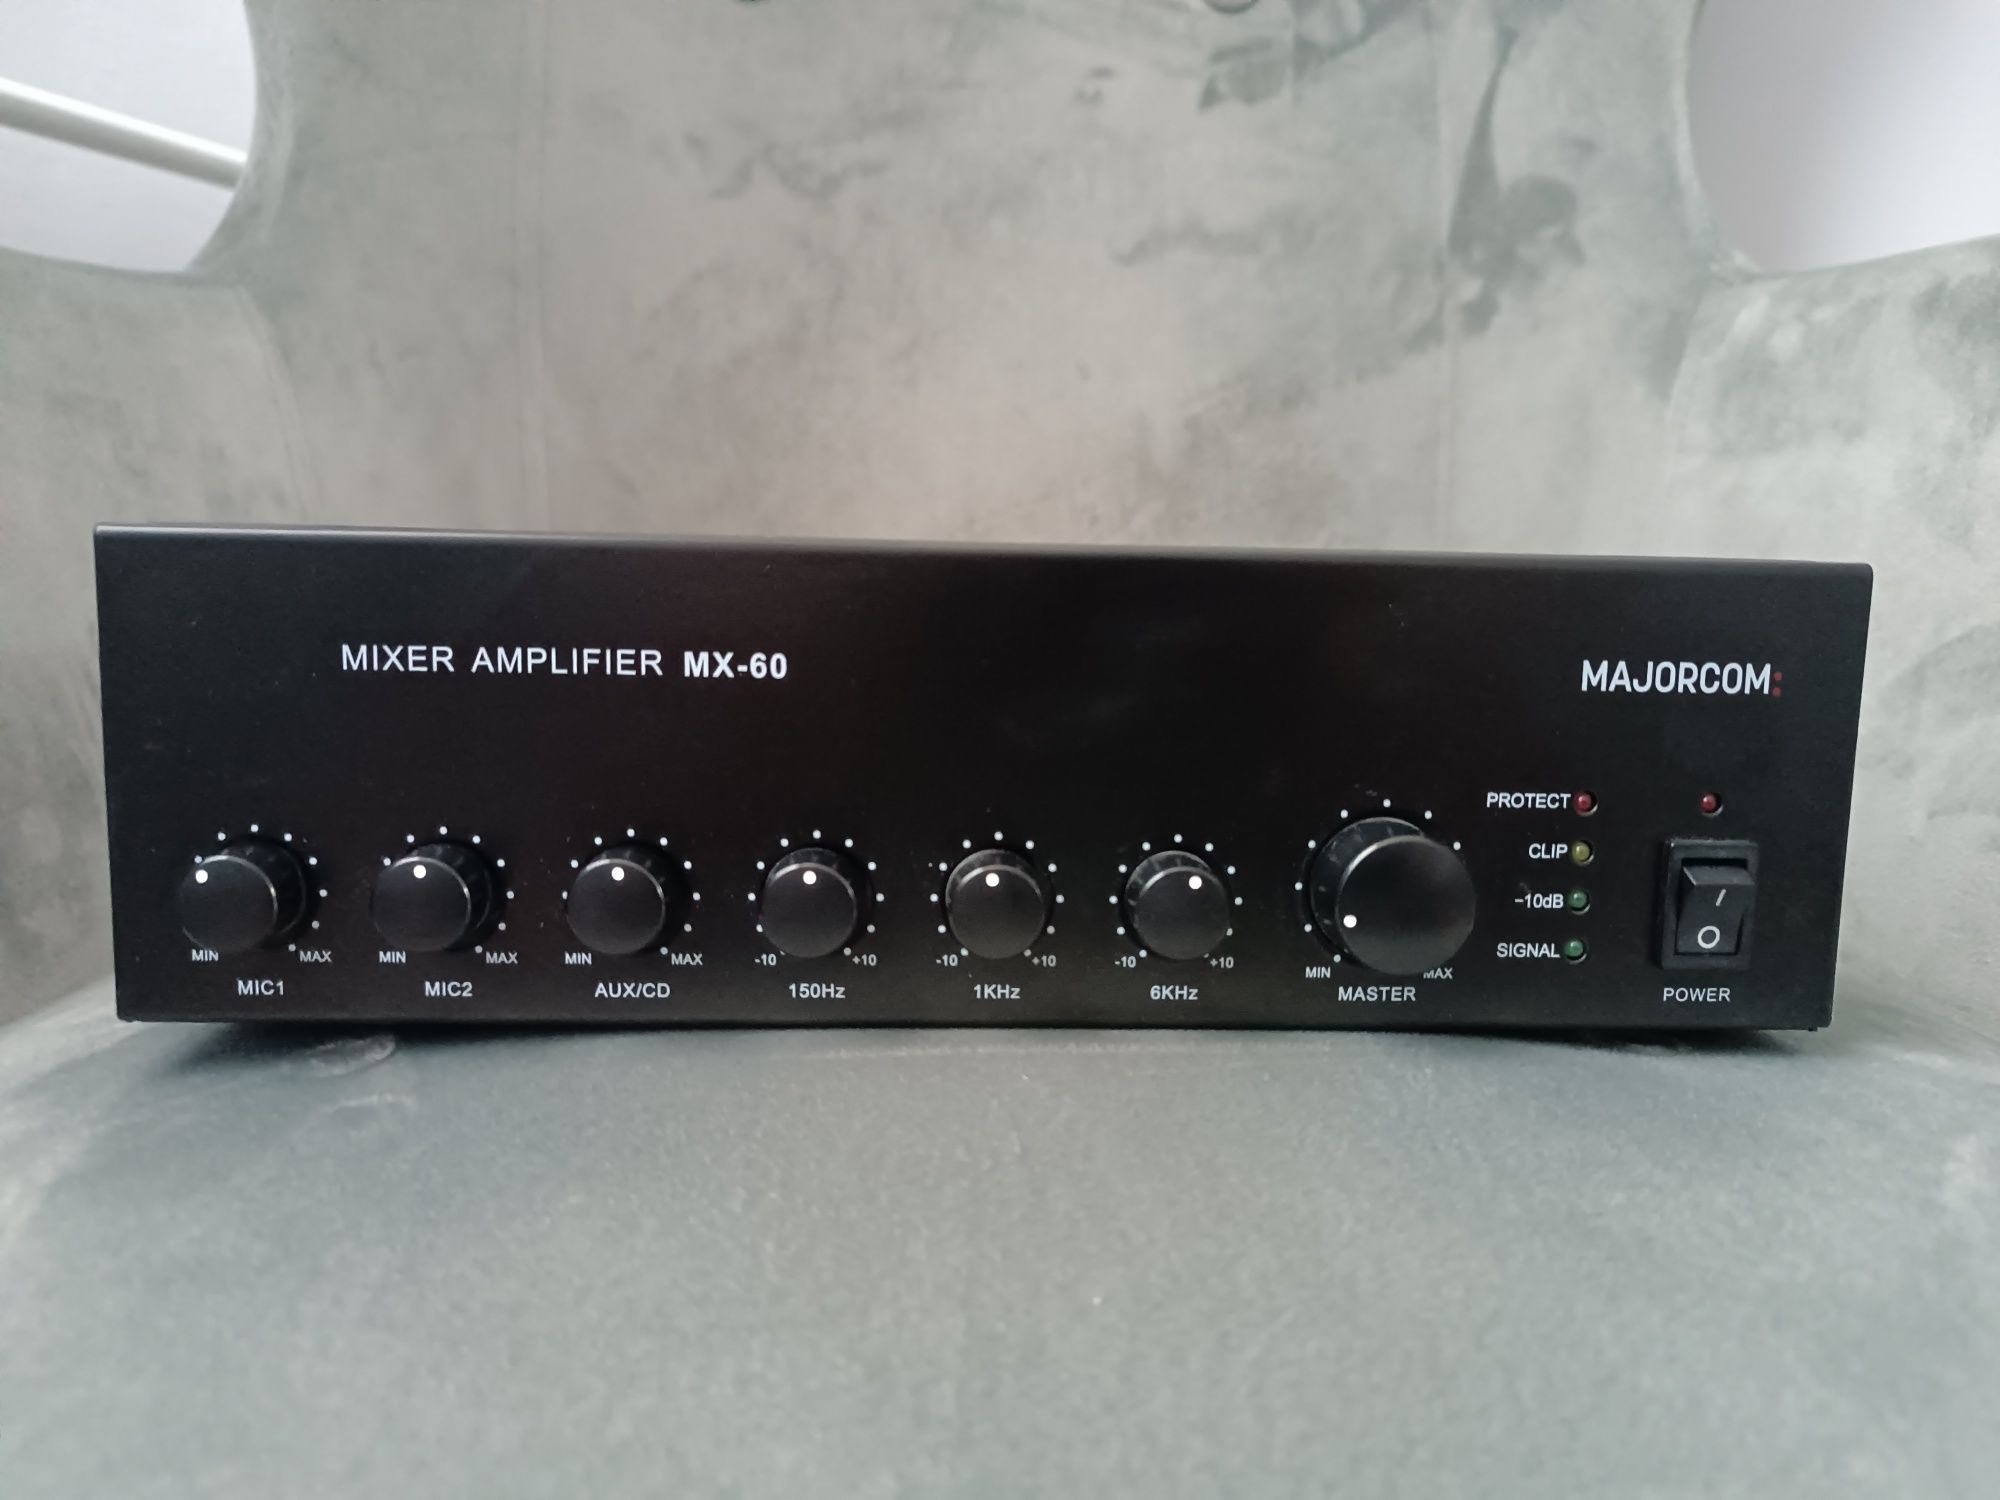 Mixer amplifier mx-60 wzmacniacz miksujący